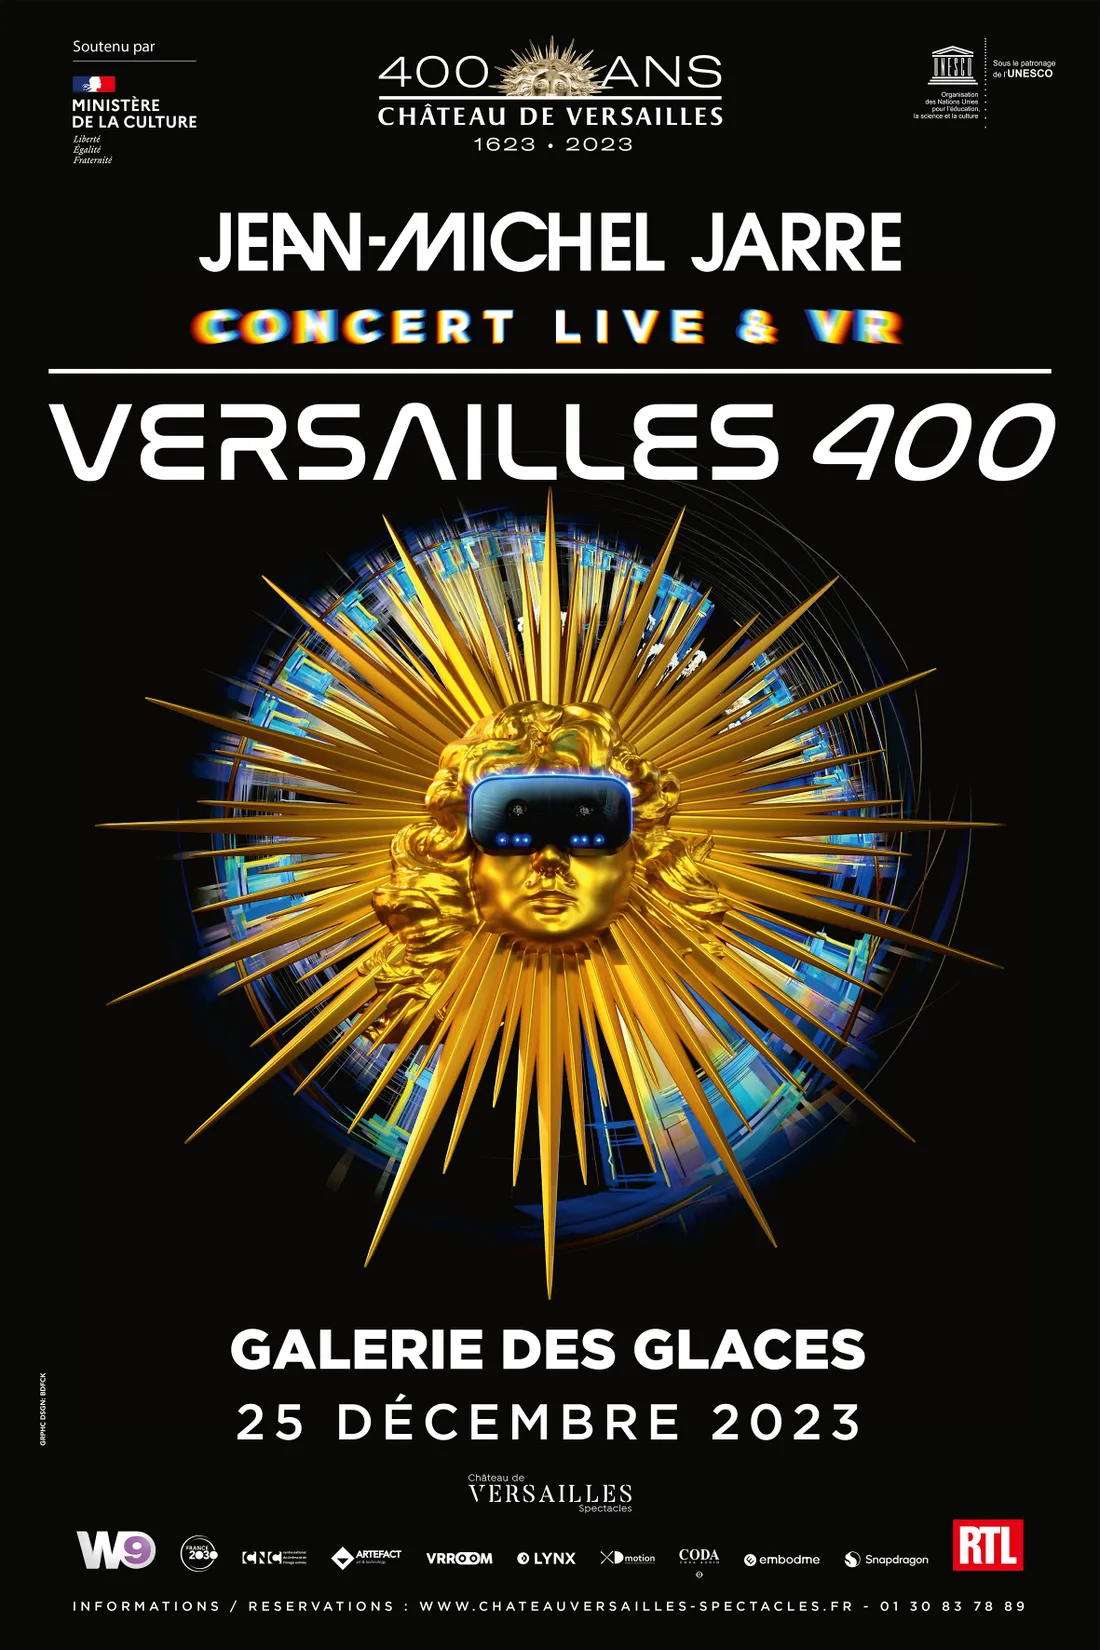 Versailles 400